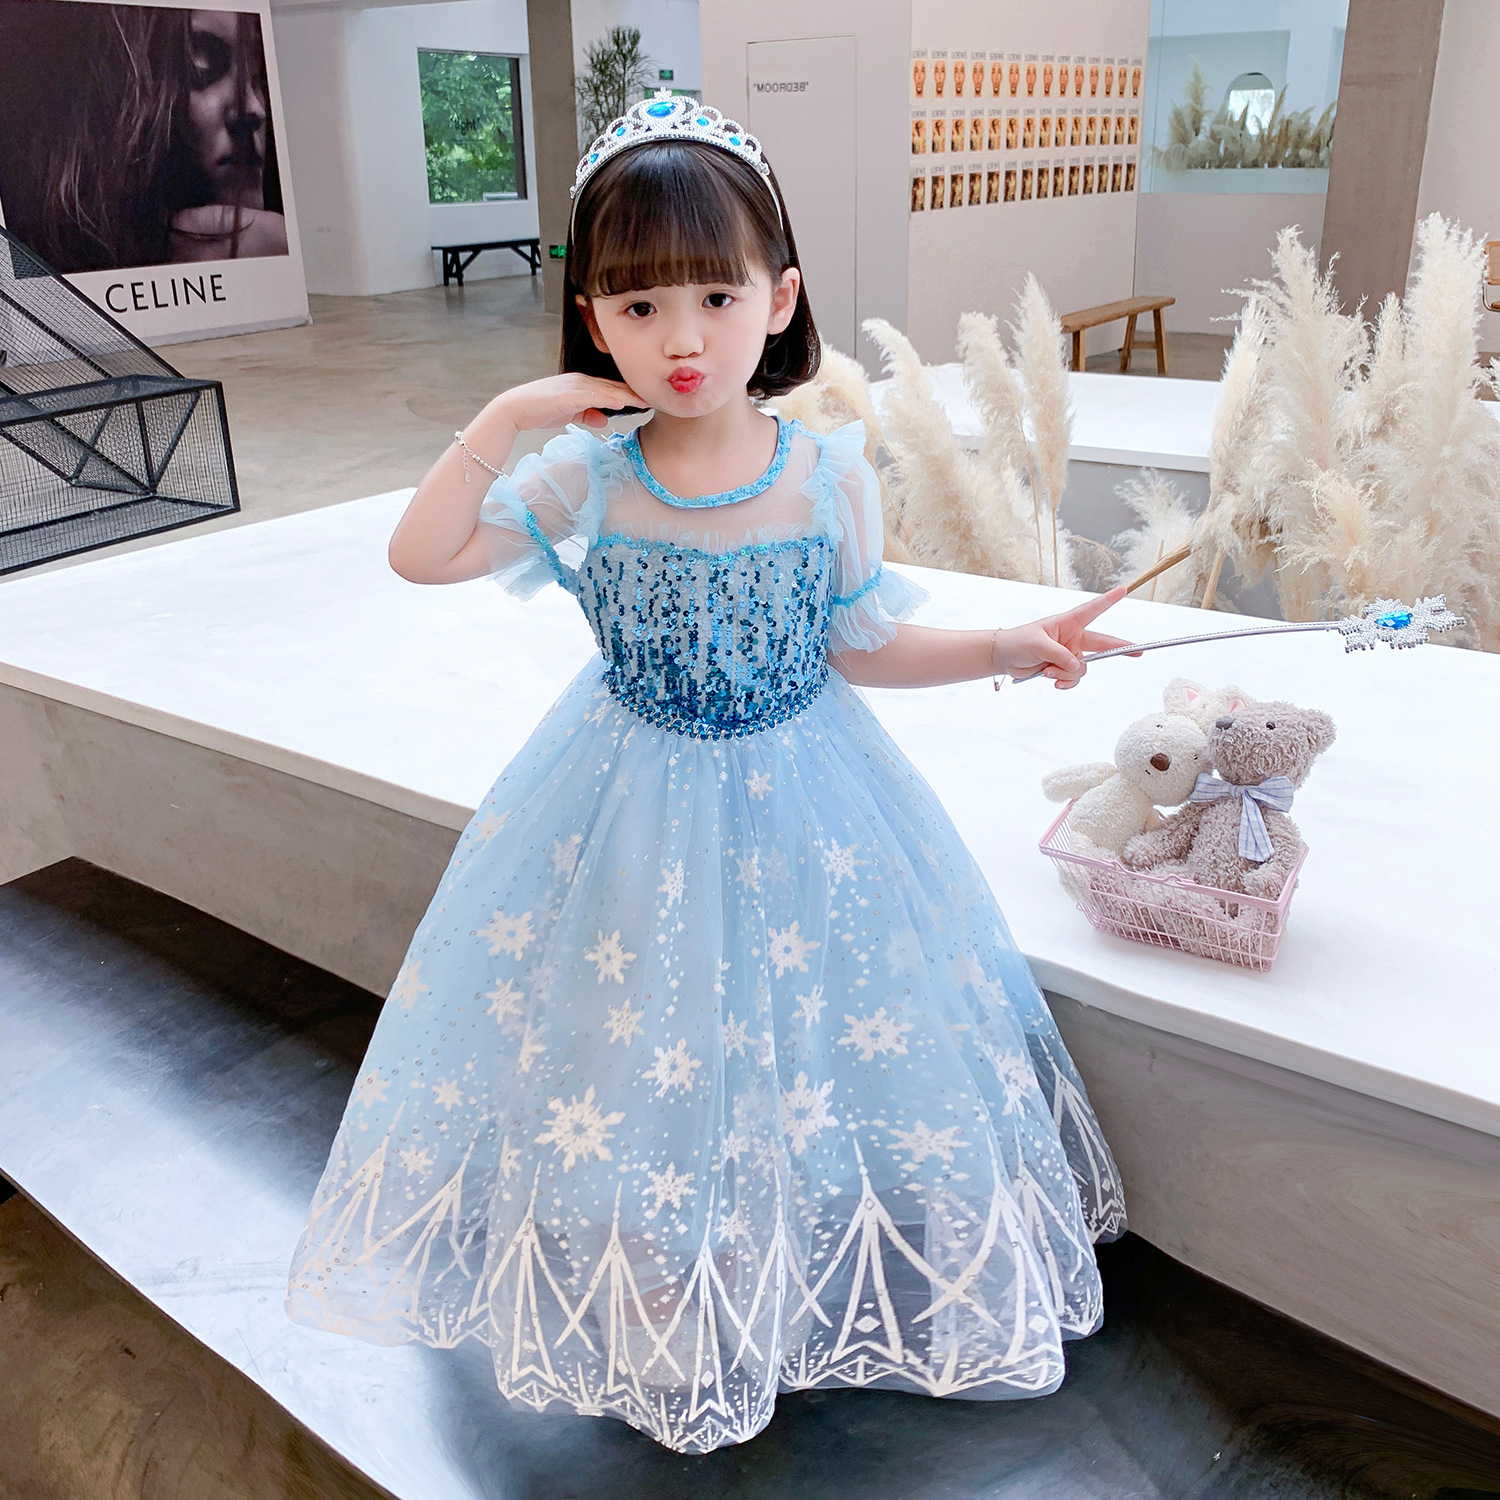 Đầm cho bé hóa trang thành công chúa Elsa